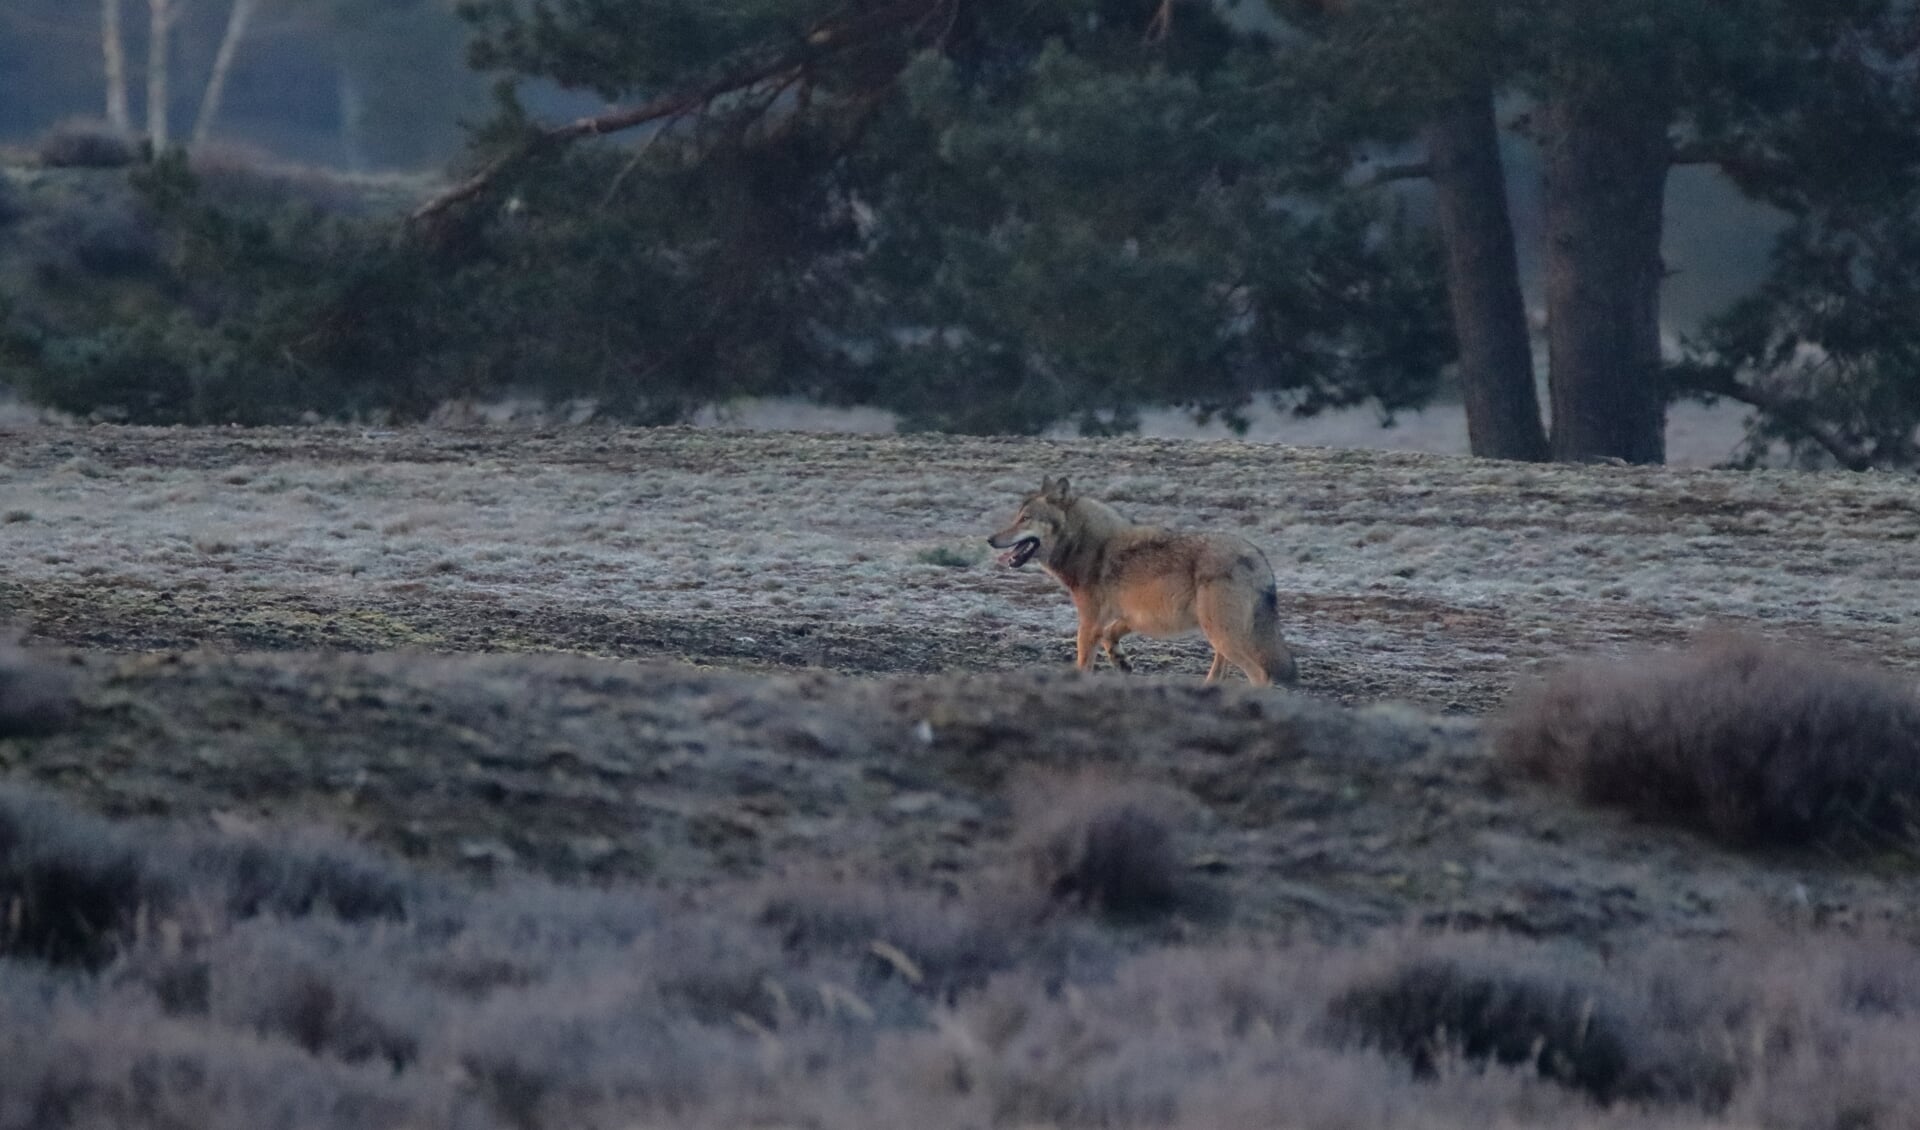 De wolf, vrijdagochtend gefotografeerd in natuurgebied Wekeromse Zand.